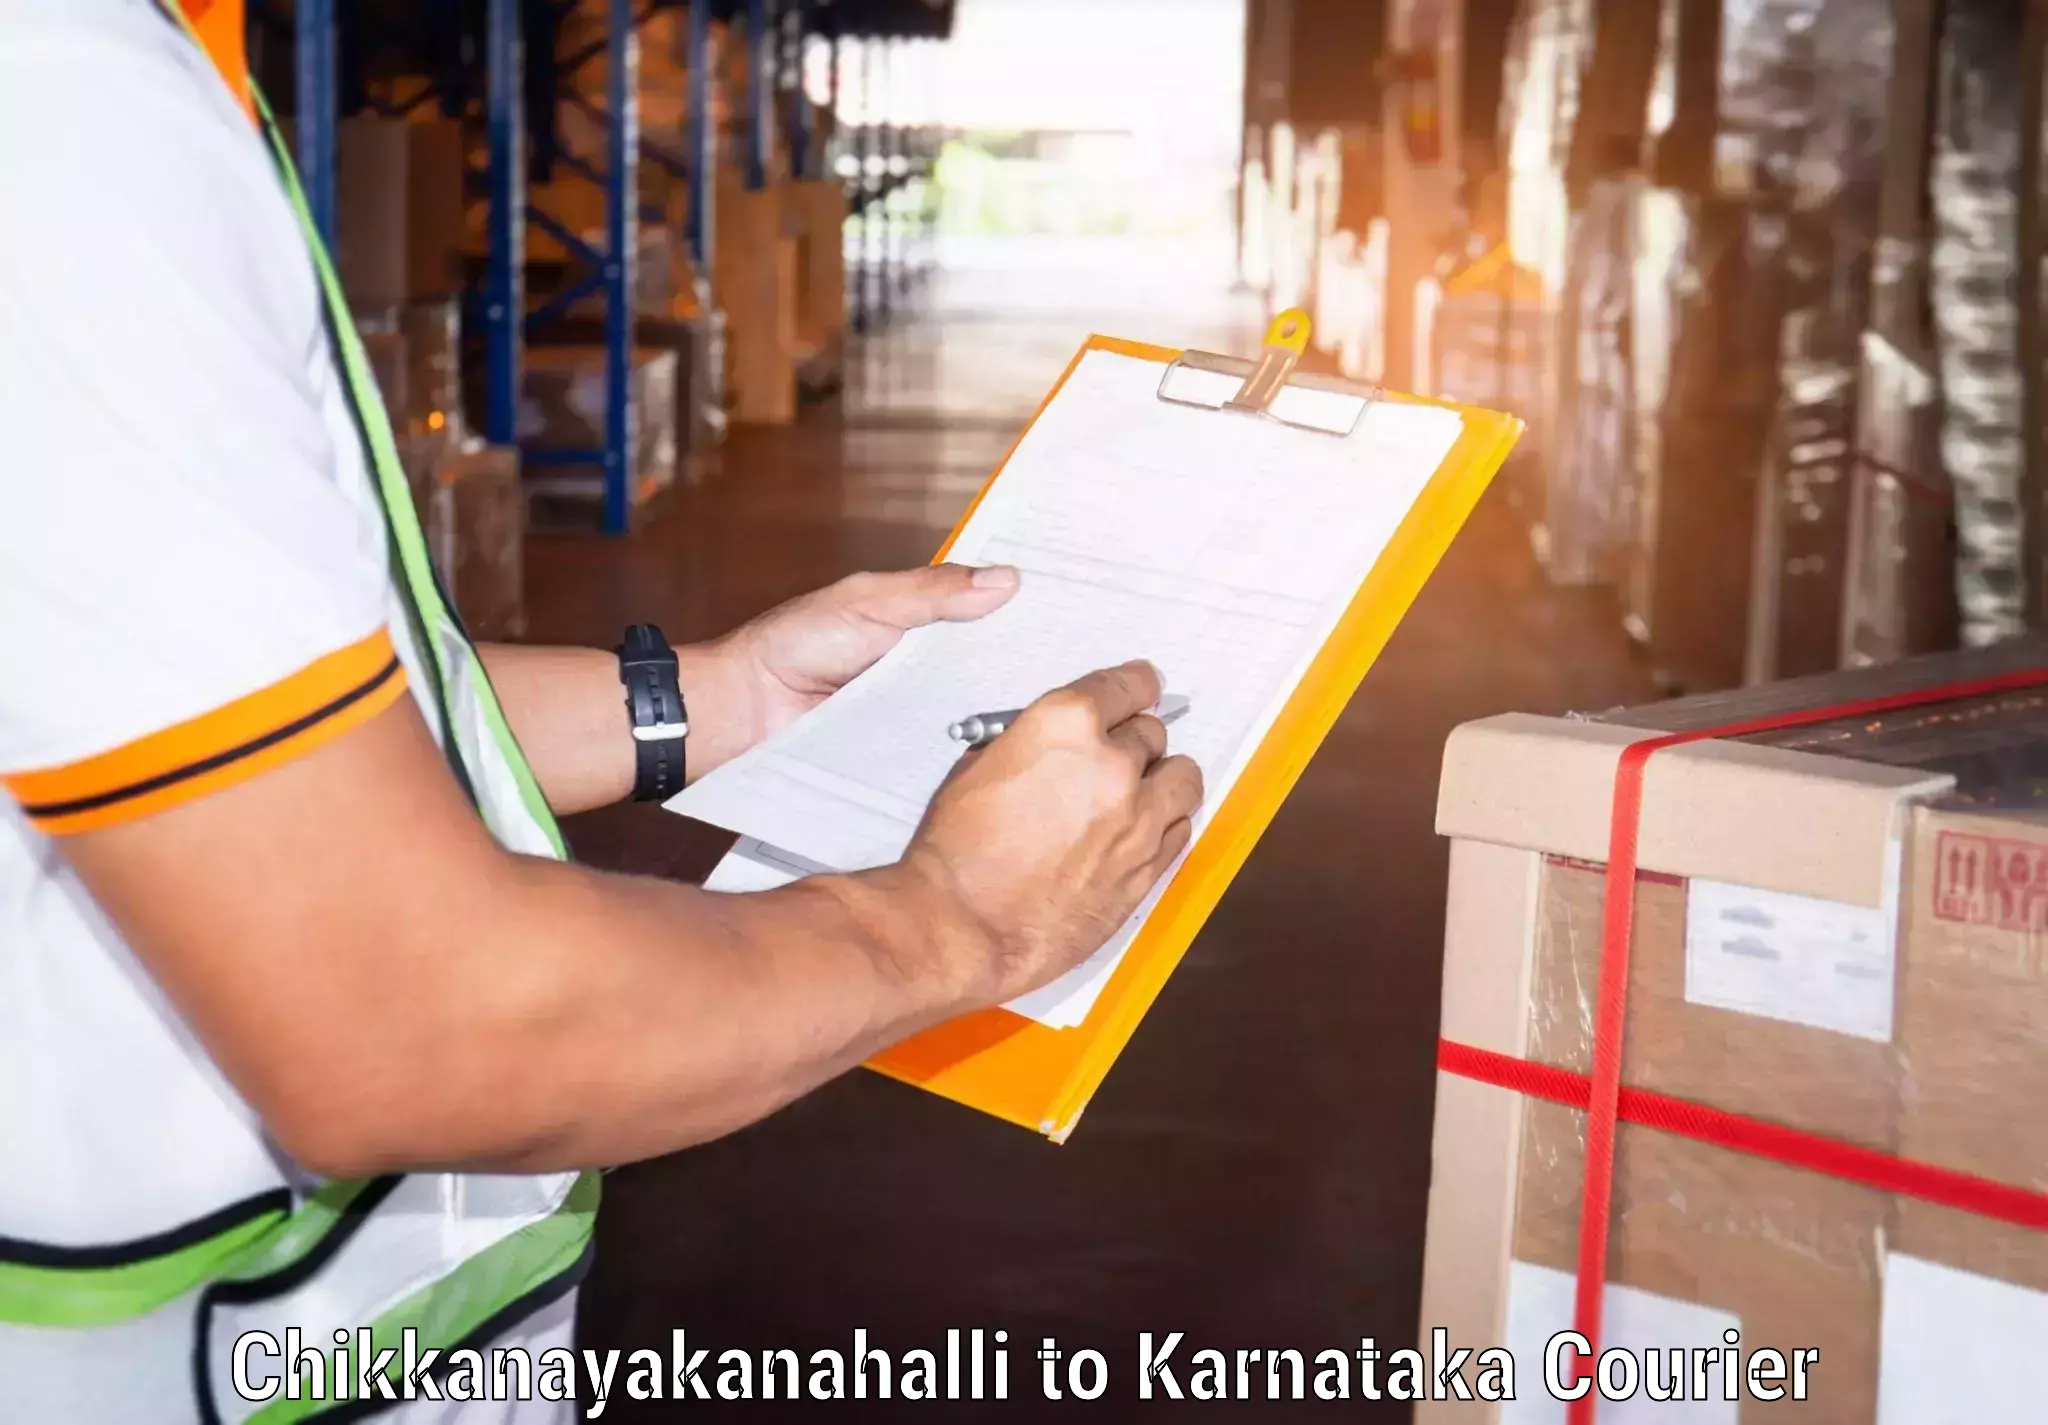 Local courier options in Chikkanayakanahalli to Hassan